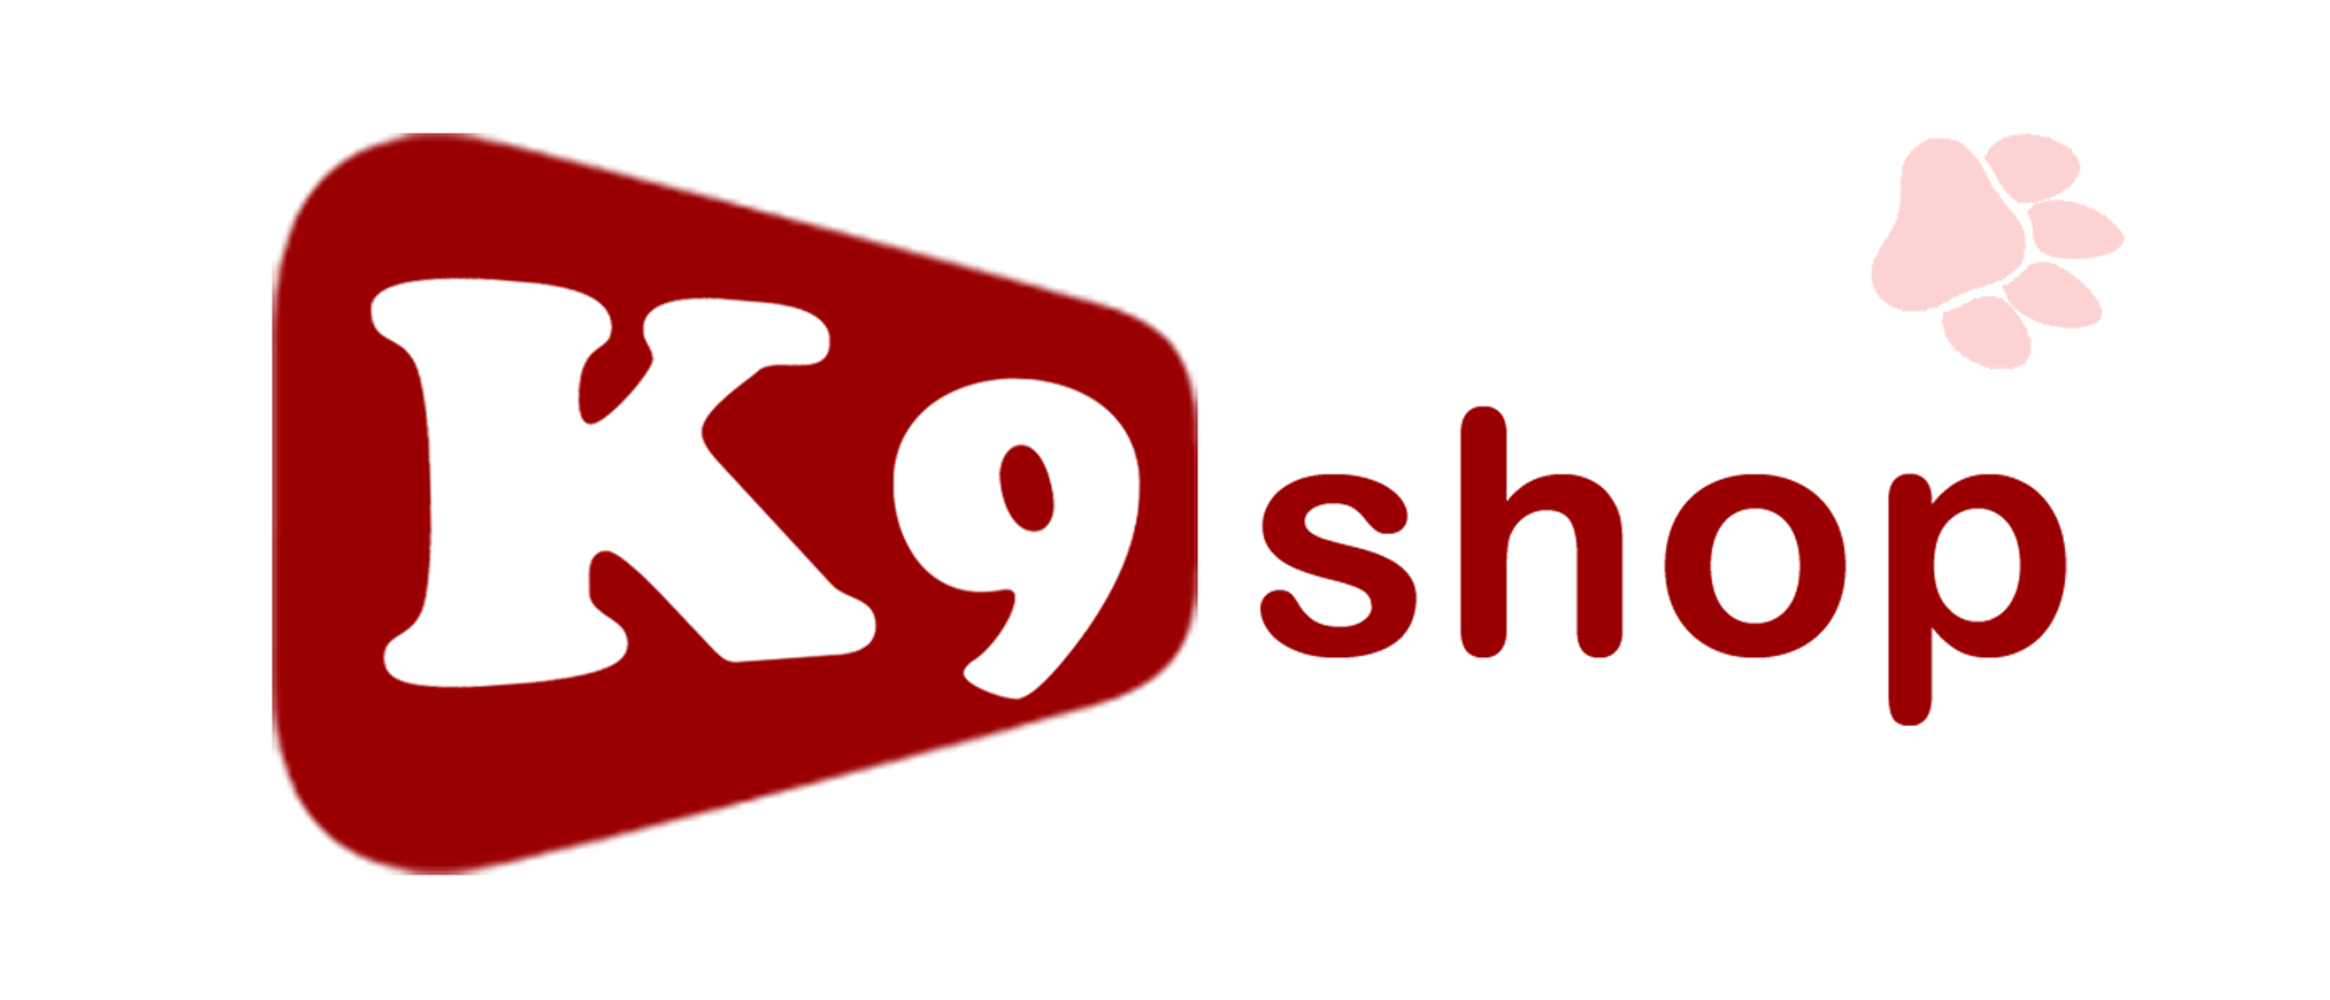 k9shop.nl